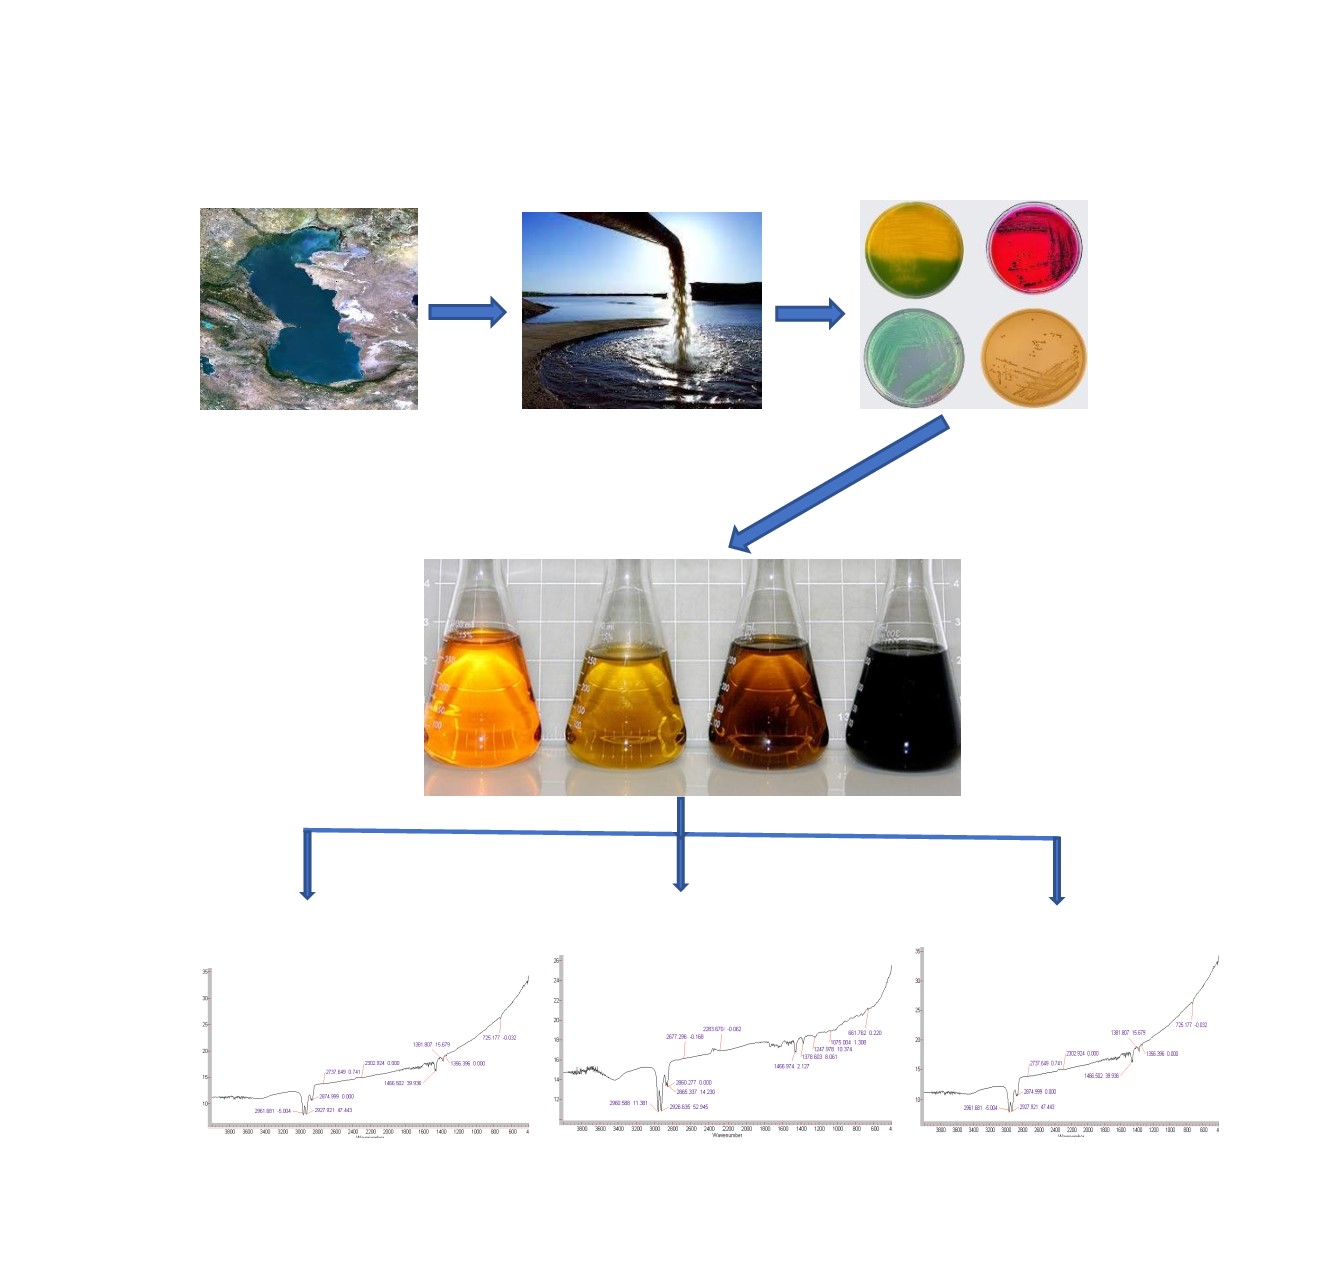 Розкладання нафти і нафтопродуктів мікроорганізмами, виділеними з азербайджанського узбережжя каспійського моря за низьких температур